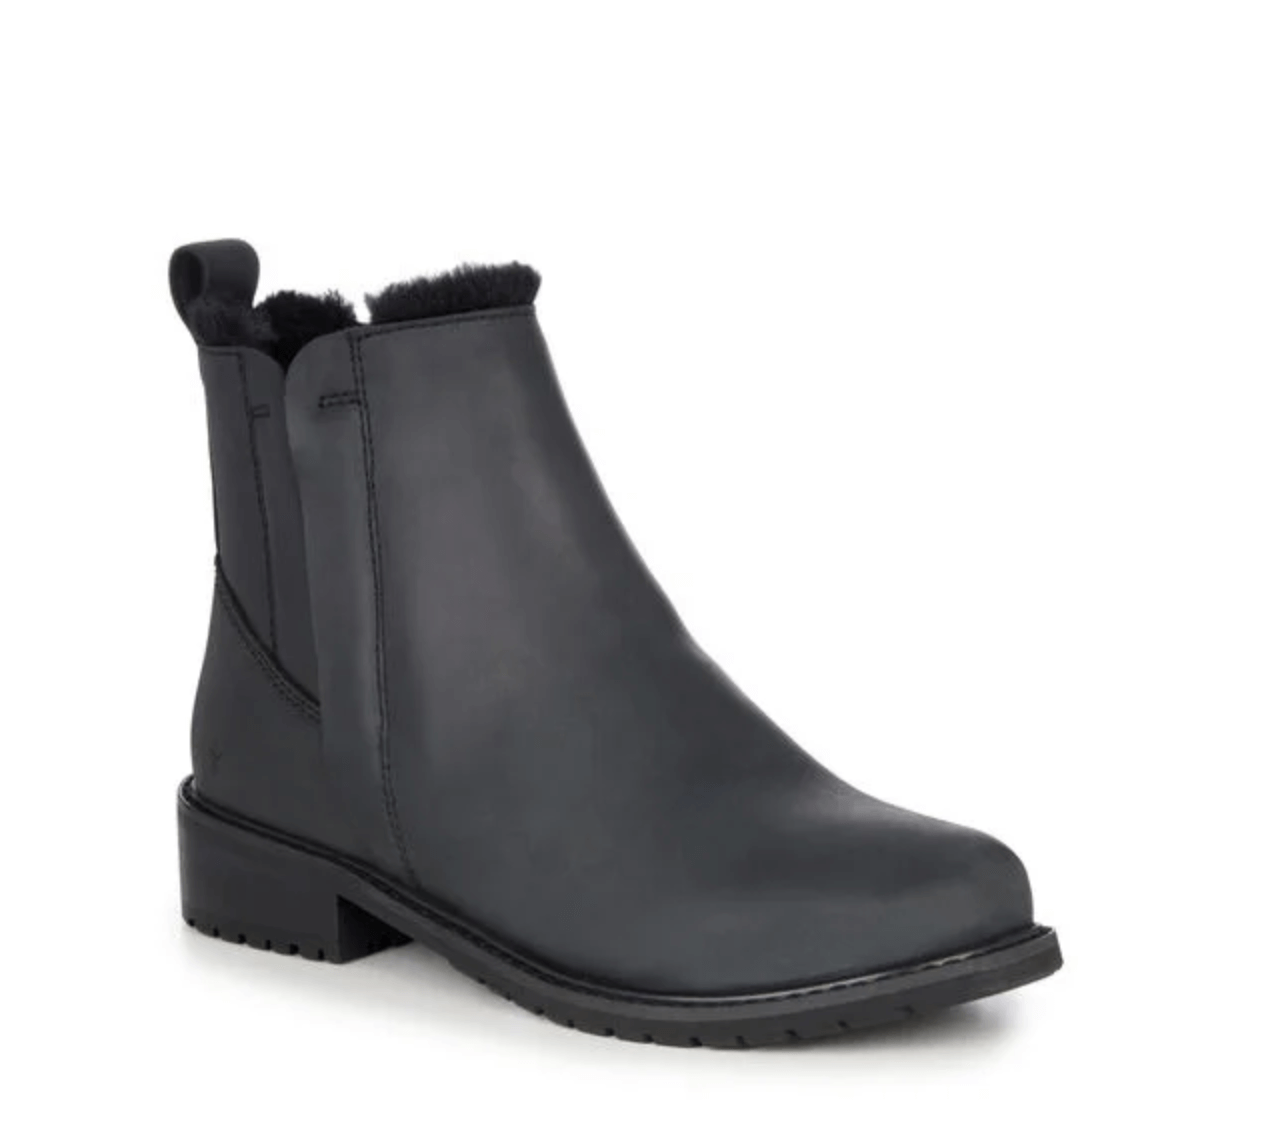 EMU Australia - Pioneer Leather Black Boots